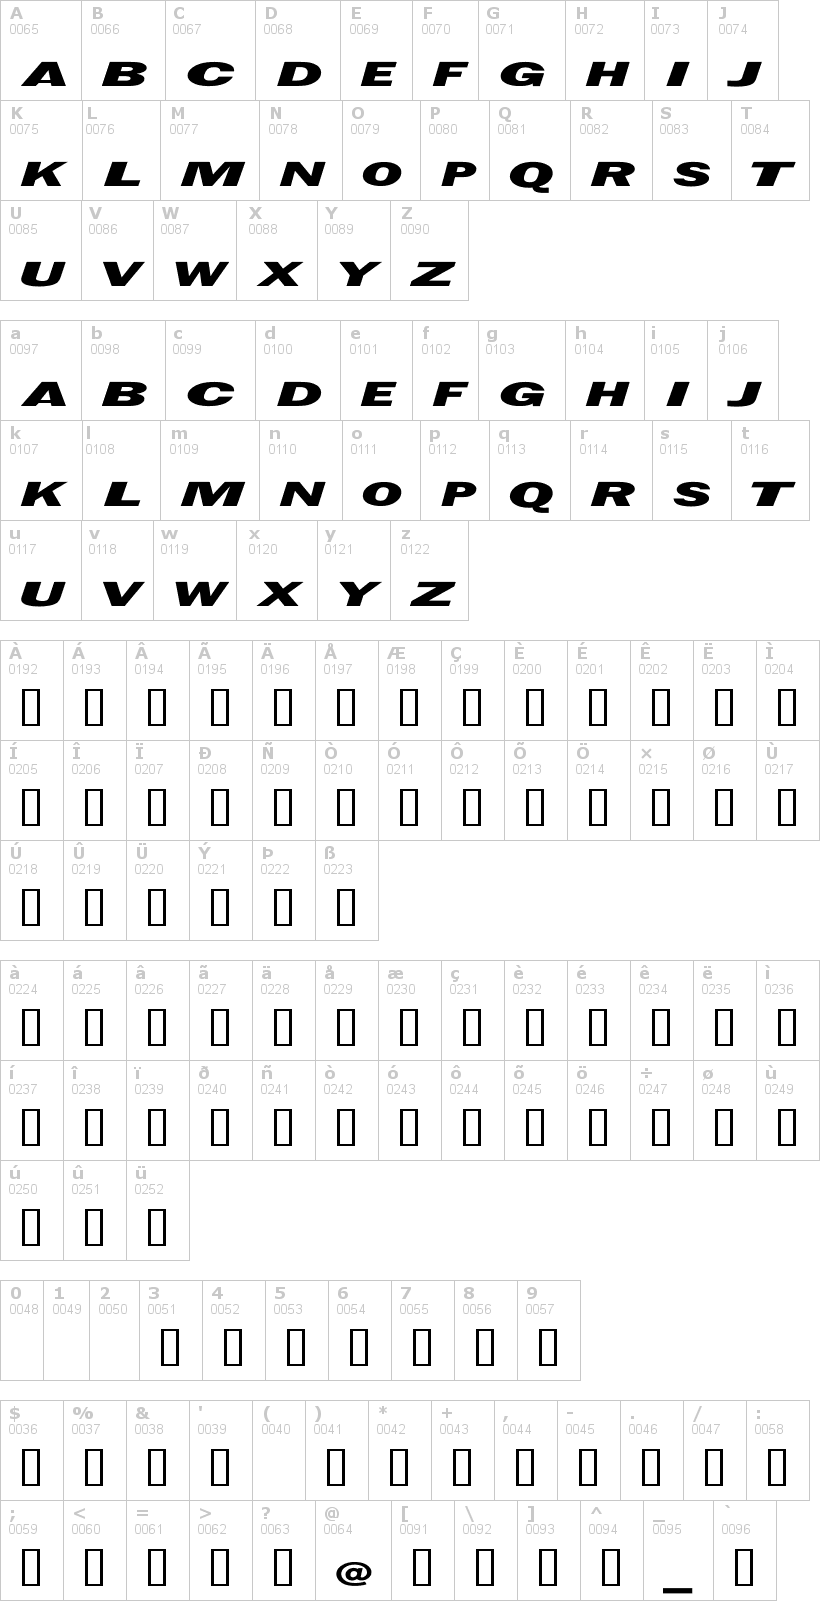 Lettere dell'alfabeto del font metal-gear-solid con le quali è possibile realizzare adesivi prespaziati